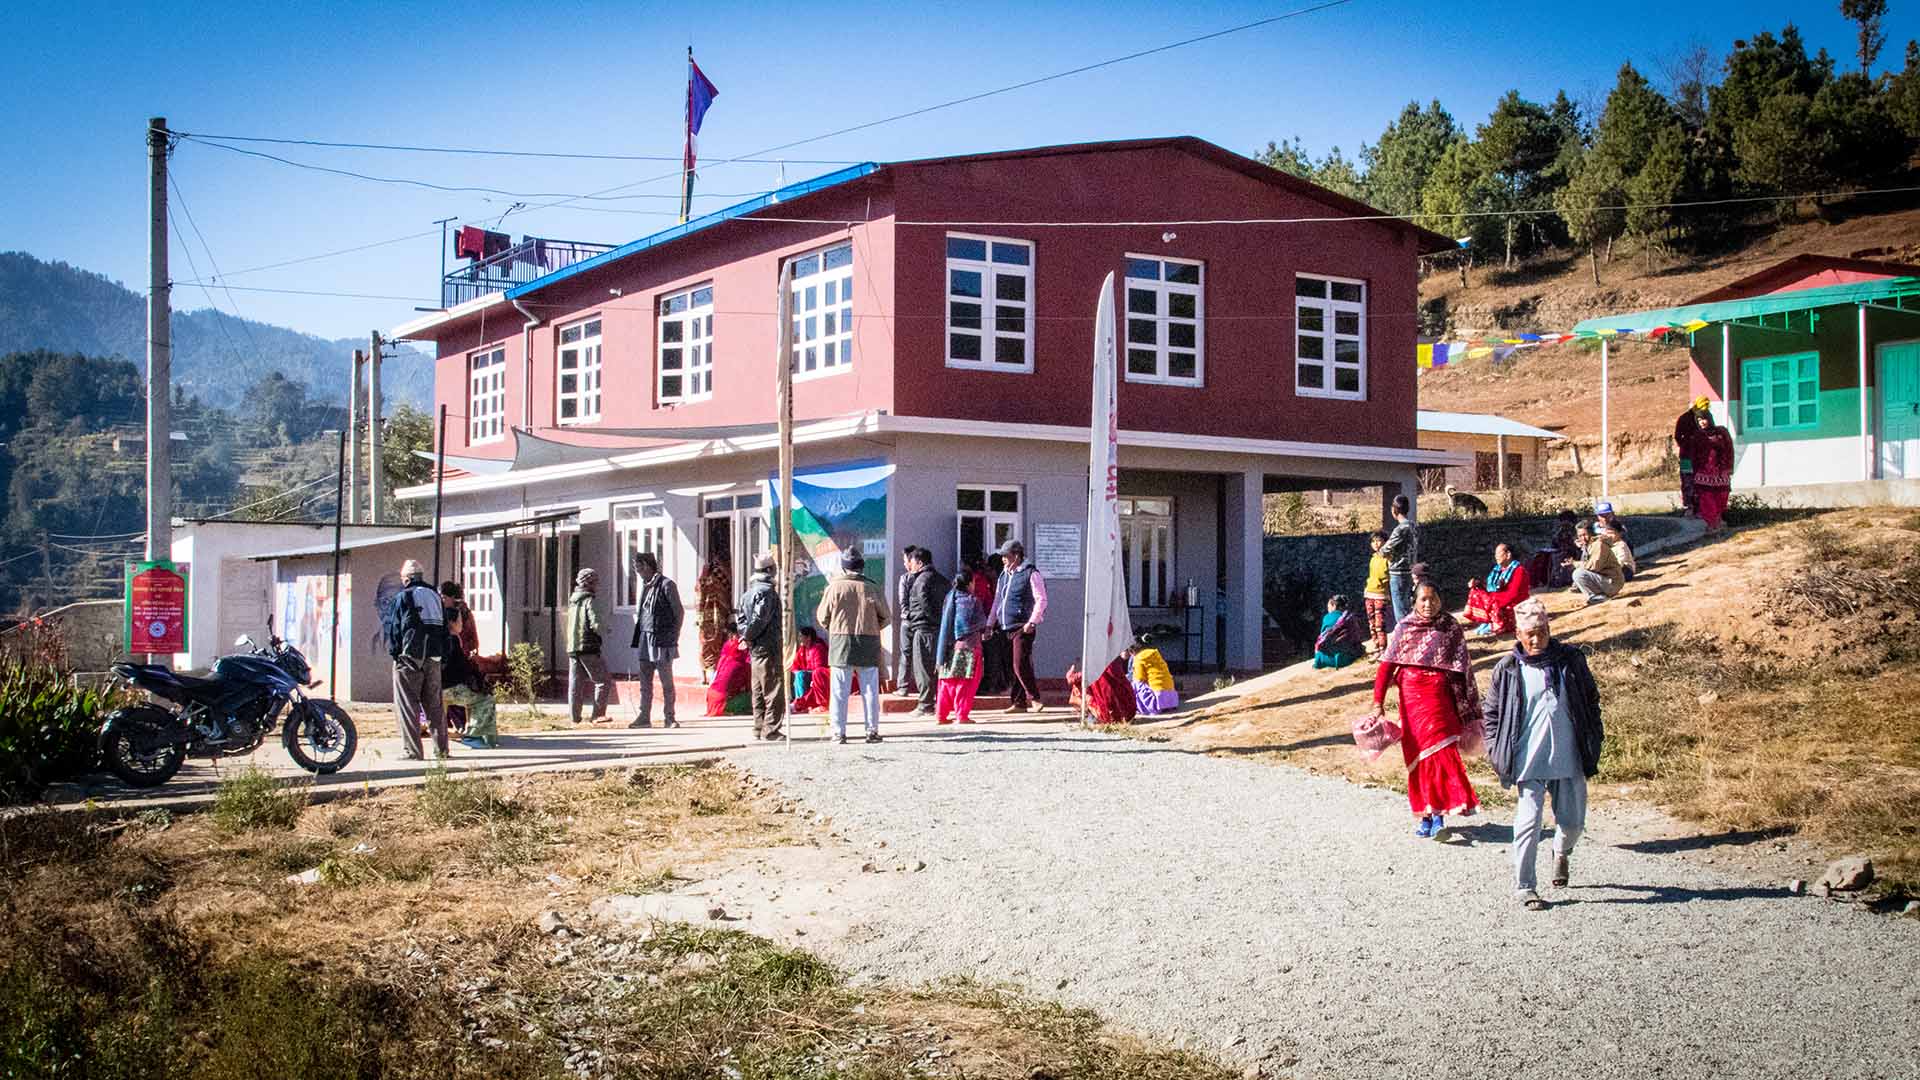 Bajrabarahi Clinic